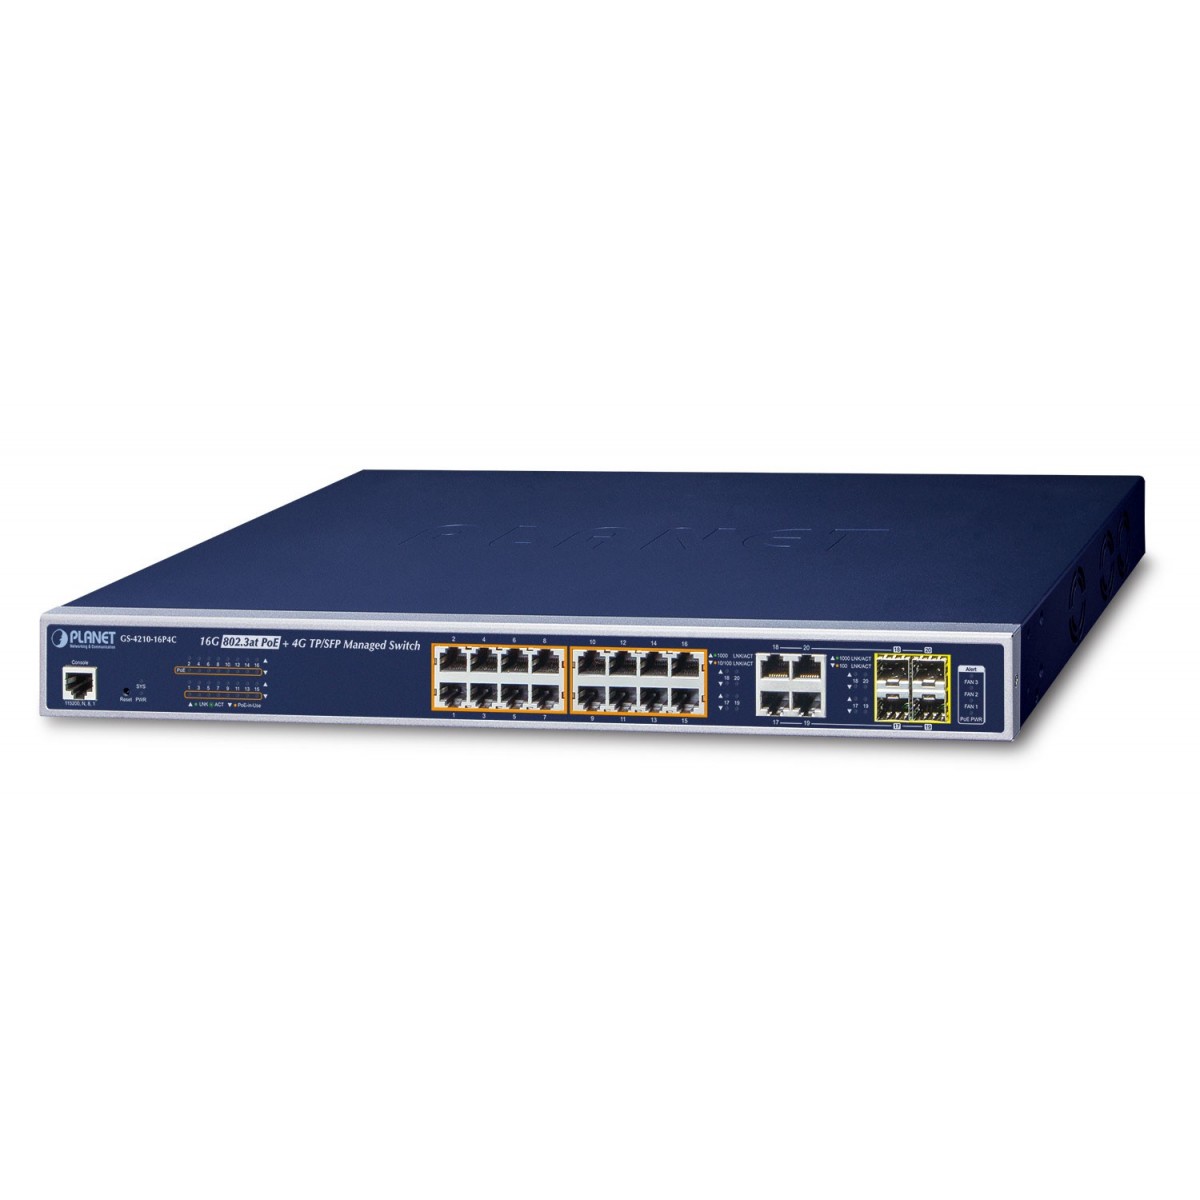 Planet GS-4210-16P4C - Managed - L2+ - Gigabit Ethernet (10/100/1000) - Power over Ethernet (PoE) - Rack mounting - 1U